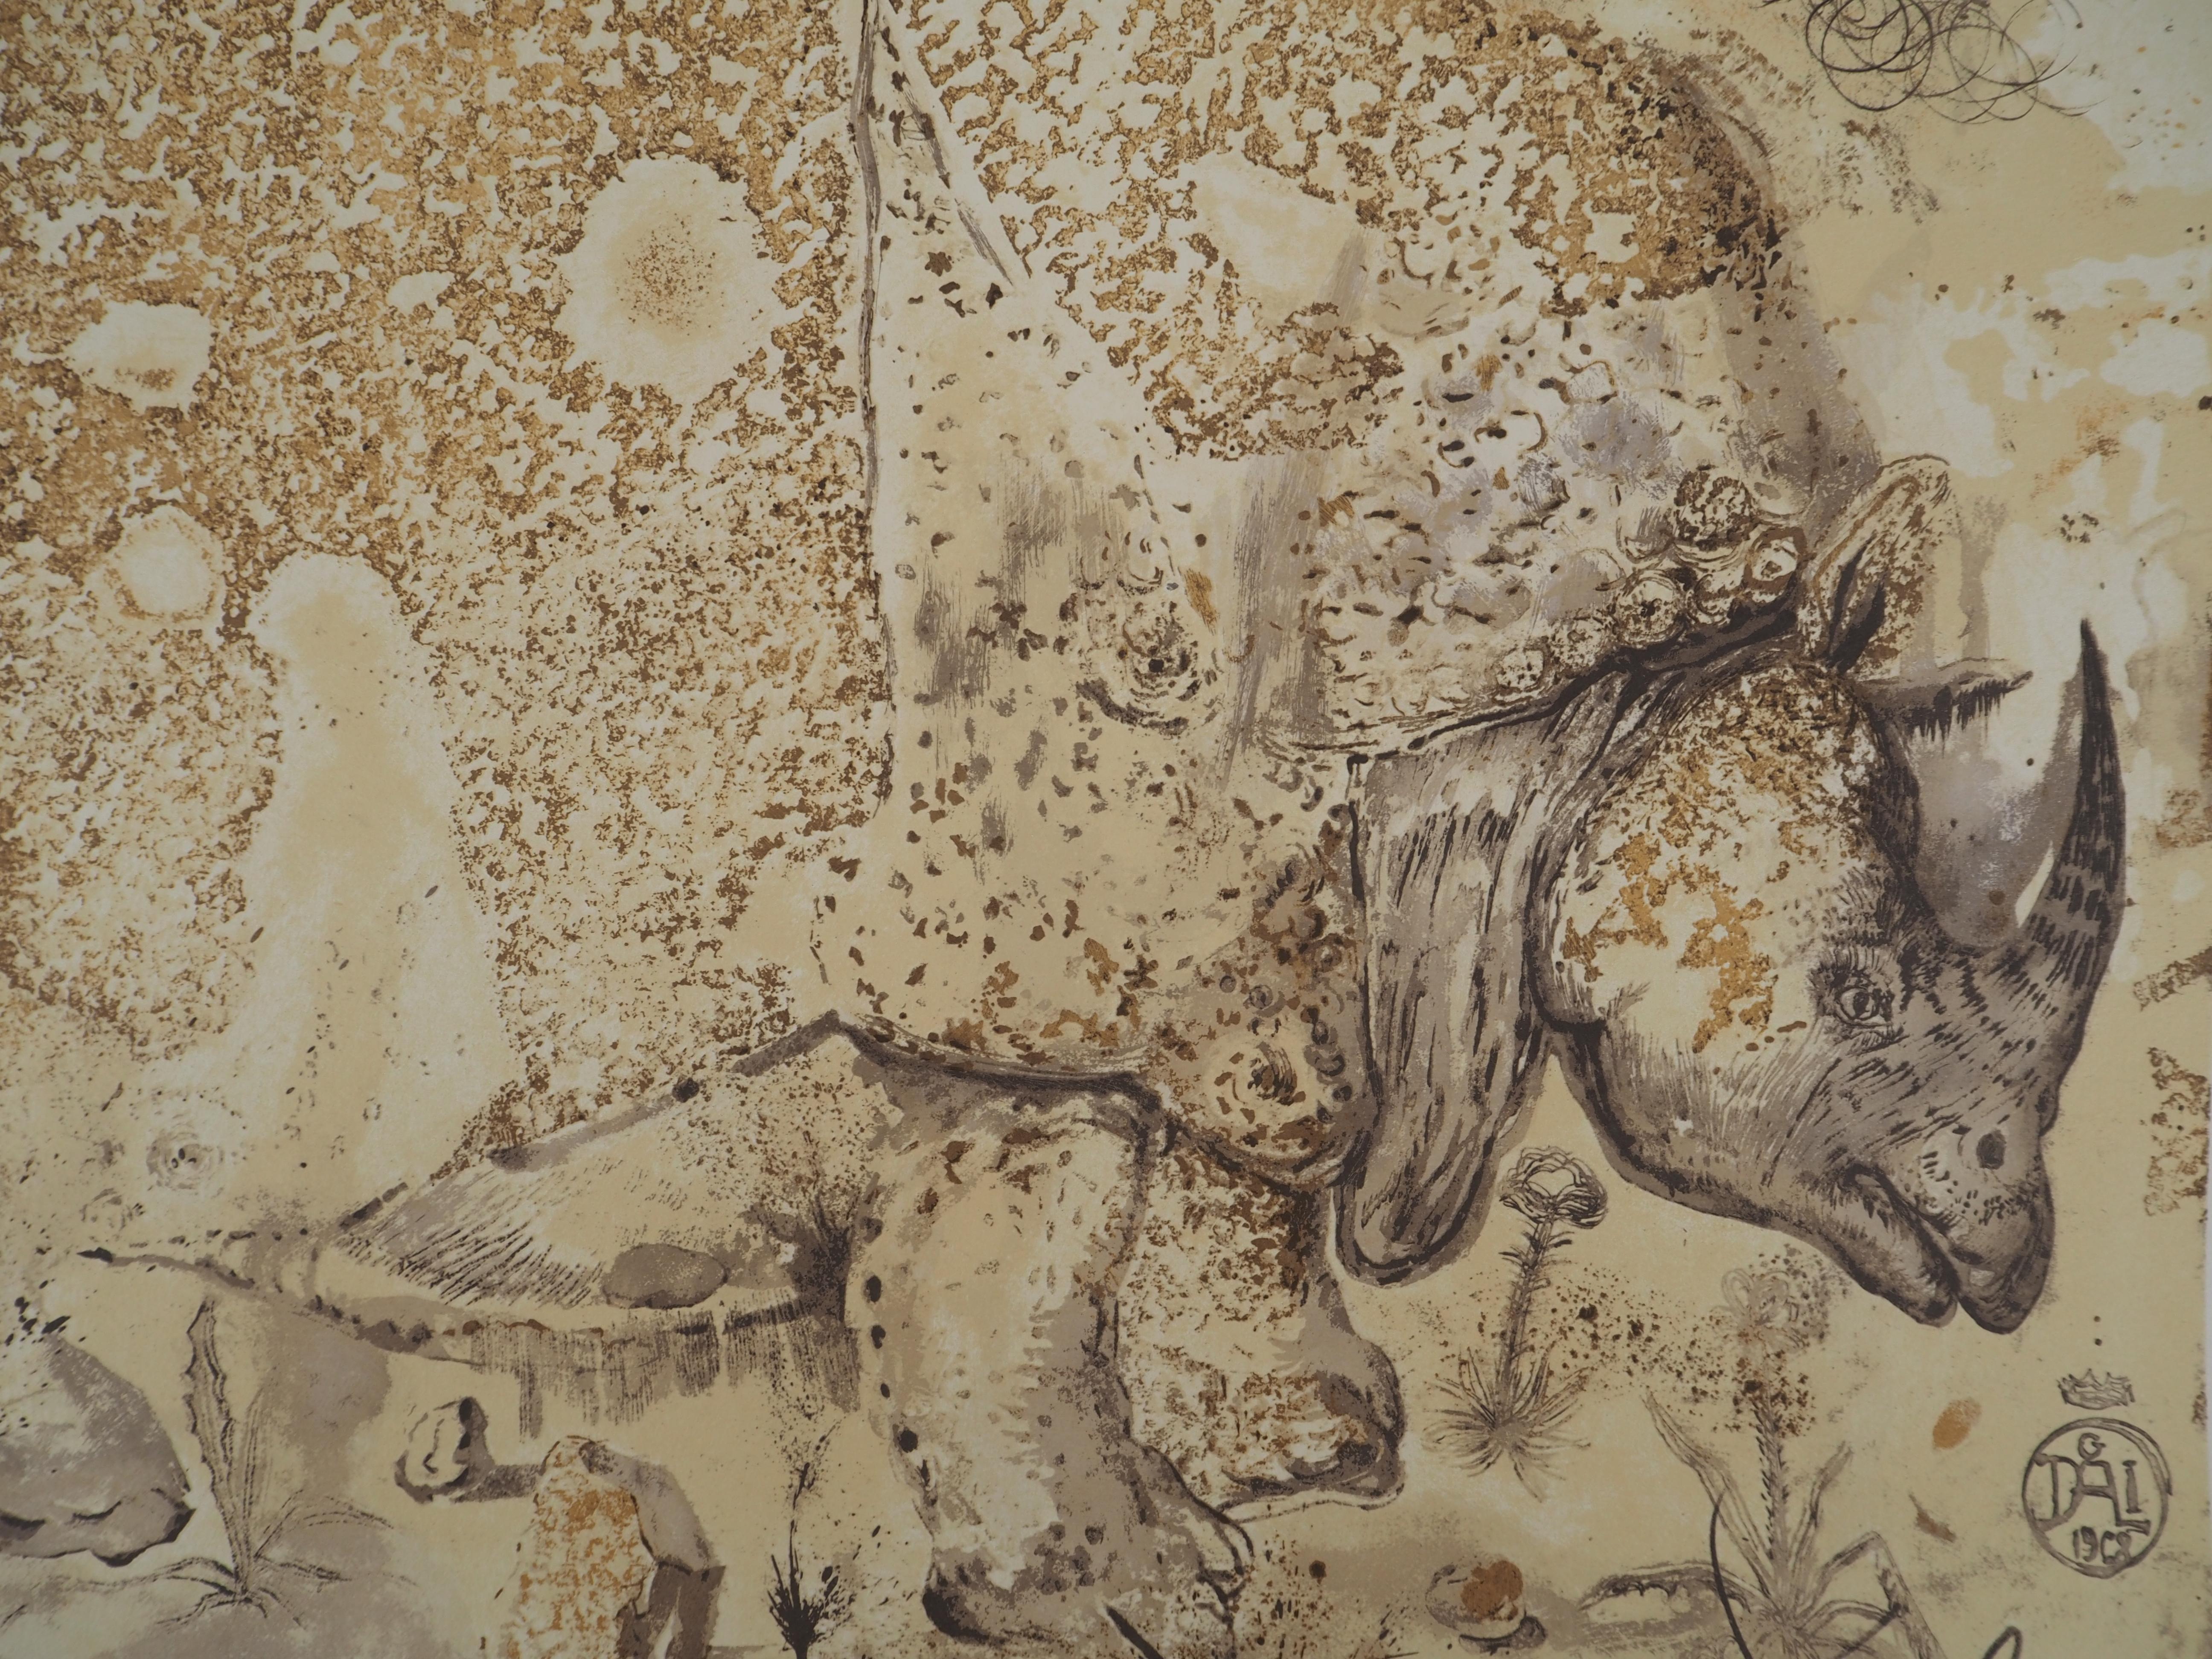 Rhinoceros, Tribute to Albrecht DURER - Signed lithograph poster (Gaspar #1503) For Sale 4